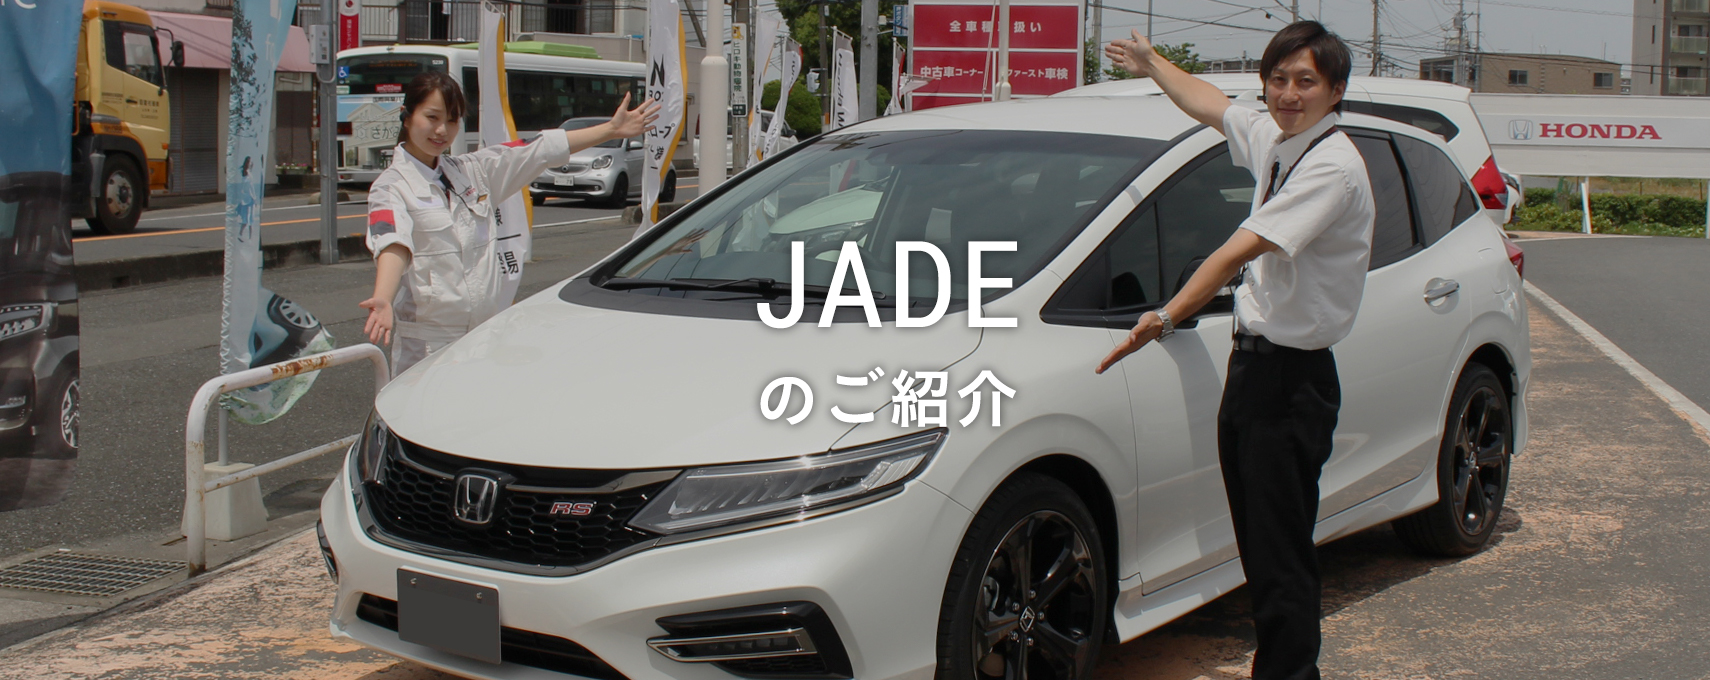 おすすめ車 Jade Honda Cars 志木